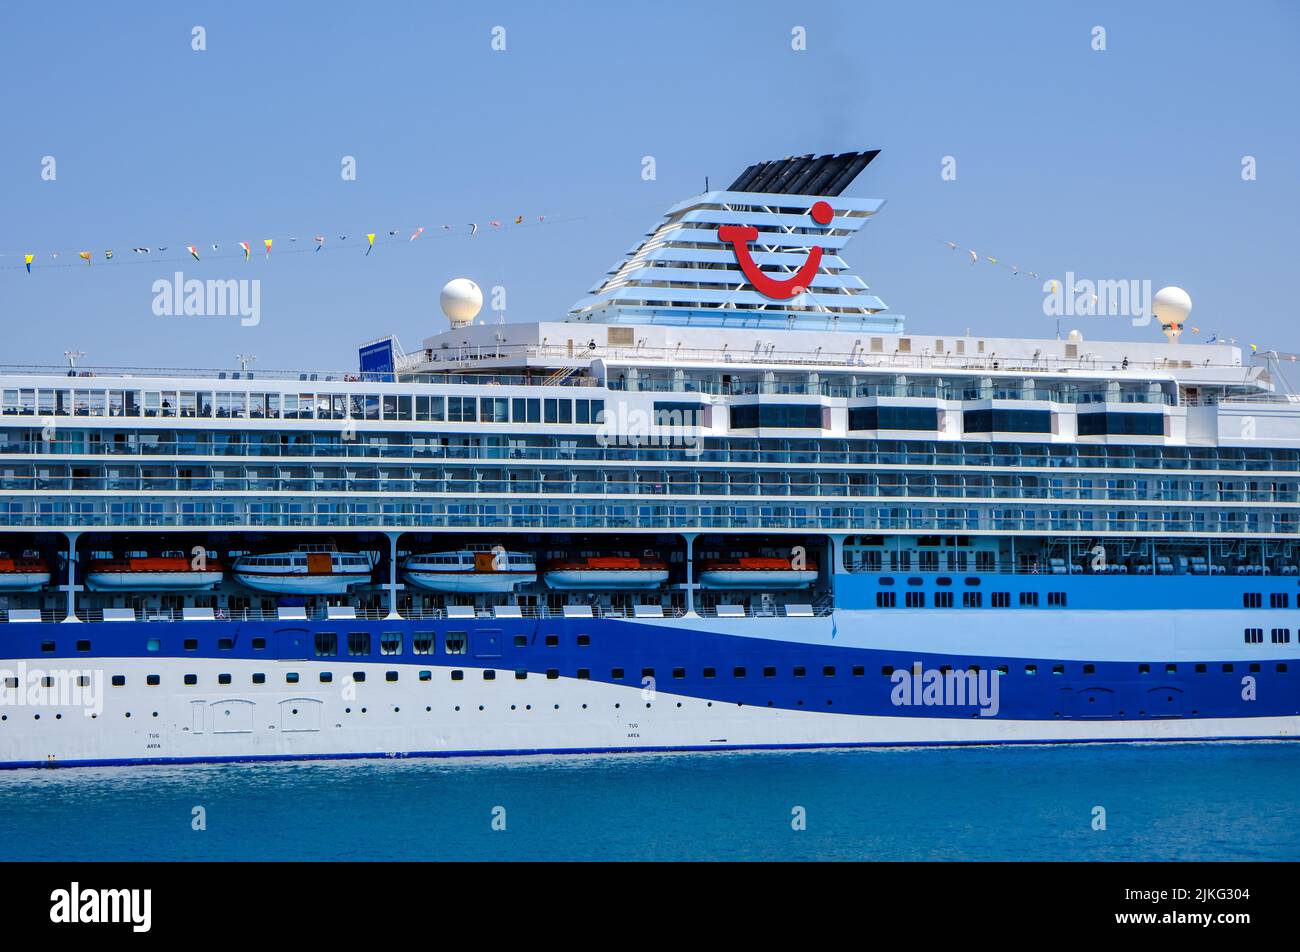 01.07.2022, Grecia, Corfú, Corfú - El crucero Marella Explorer de TUI está amarrado en el puerto de Corfú. El barco de 262 metros de largo tiene una masa de 9.900 toneladas. Foto de stock